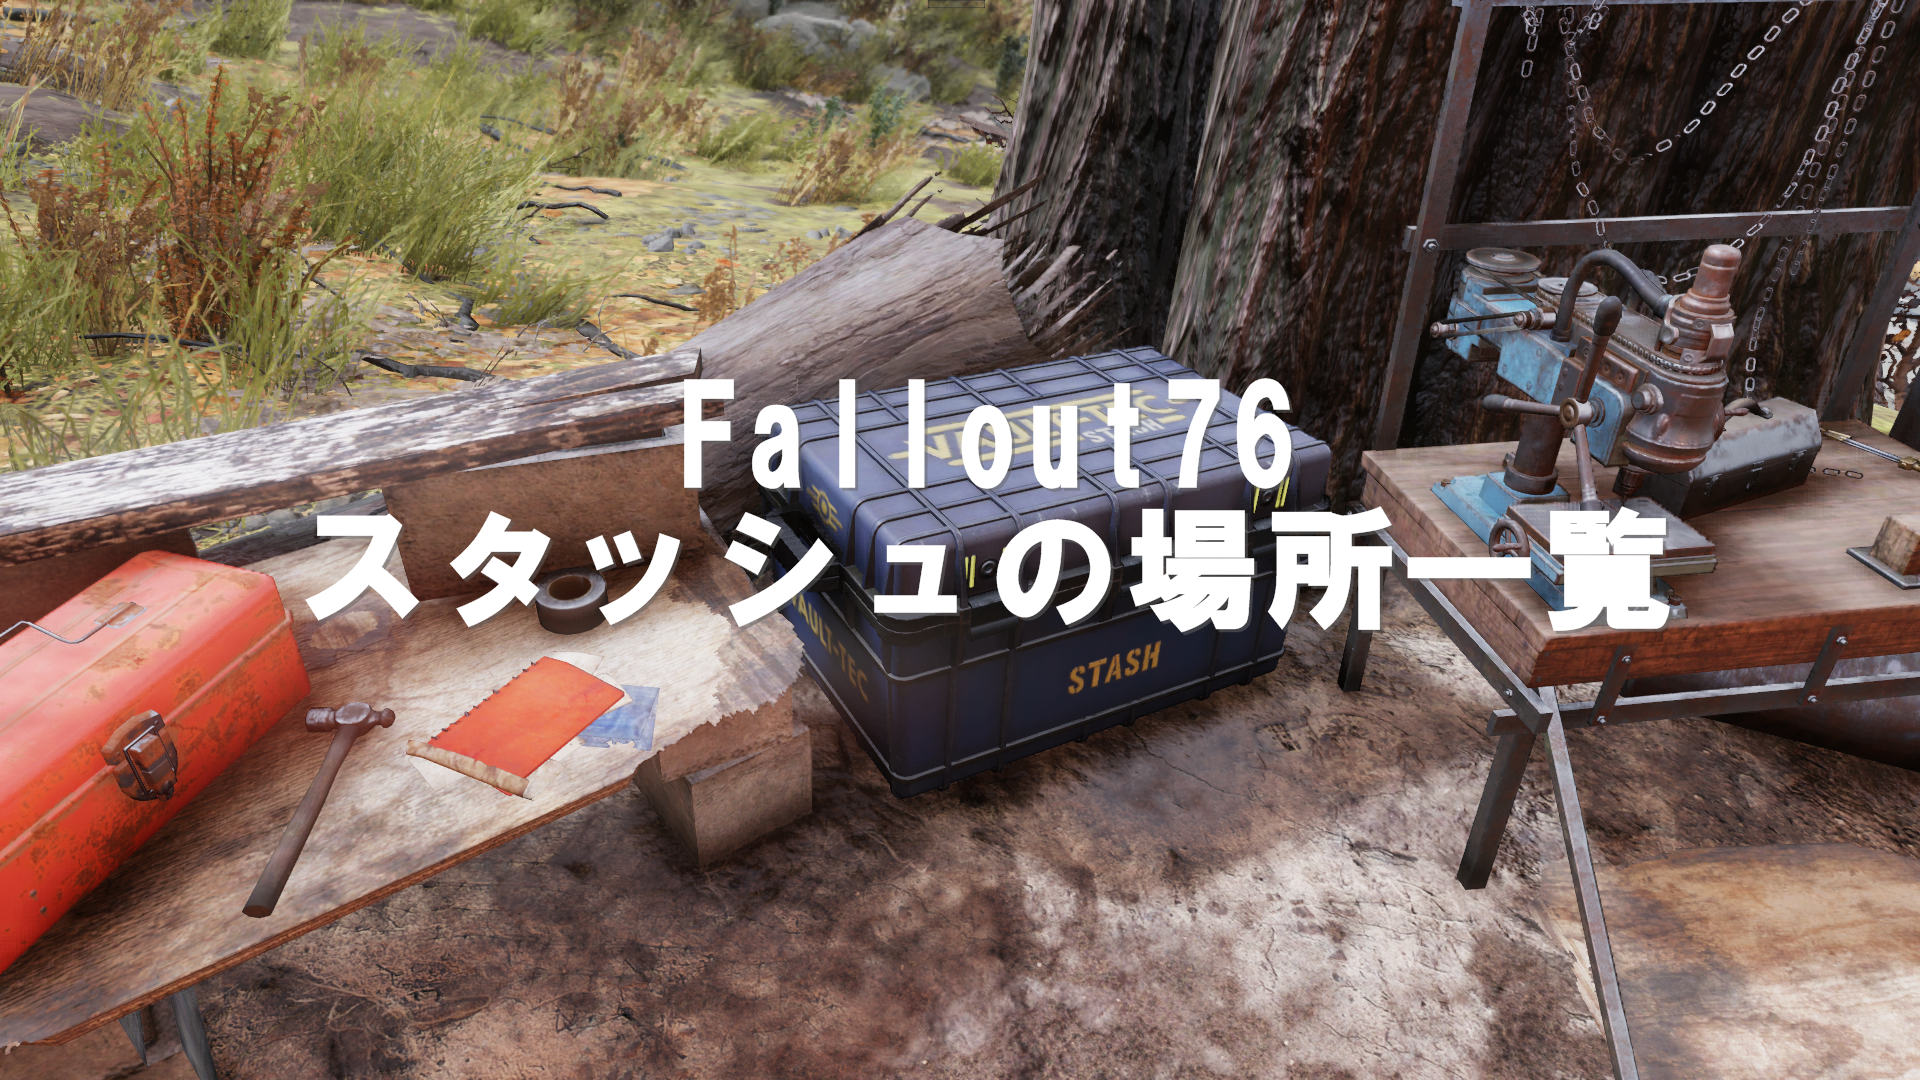 Fallout76：収納箱（スタッシュ）の場所をマップで紹介